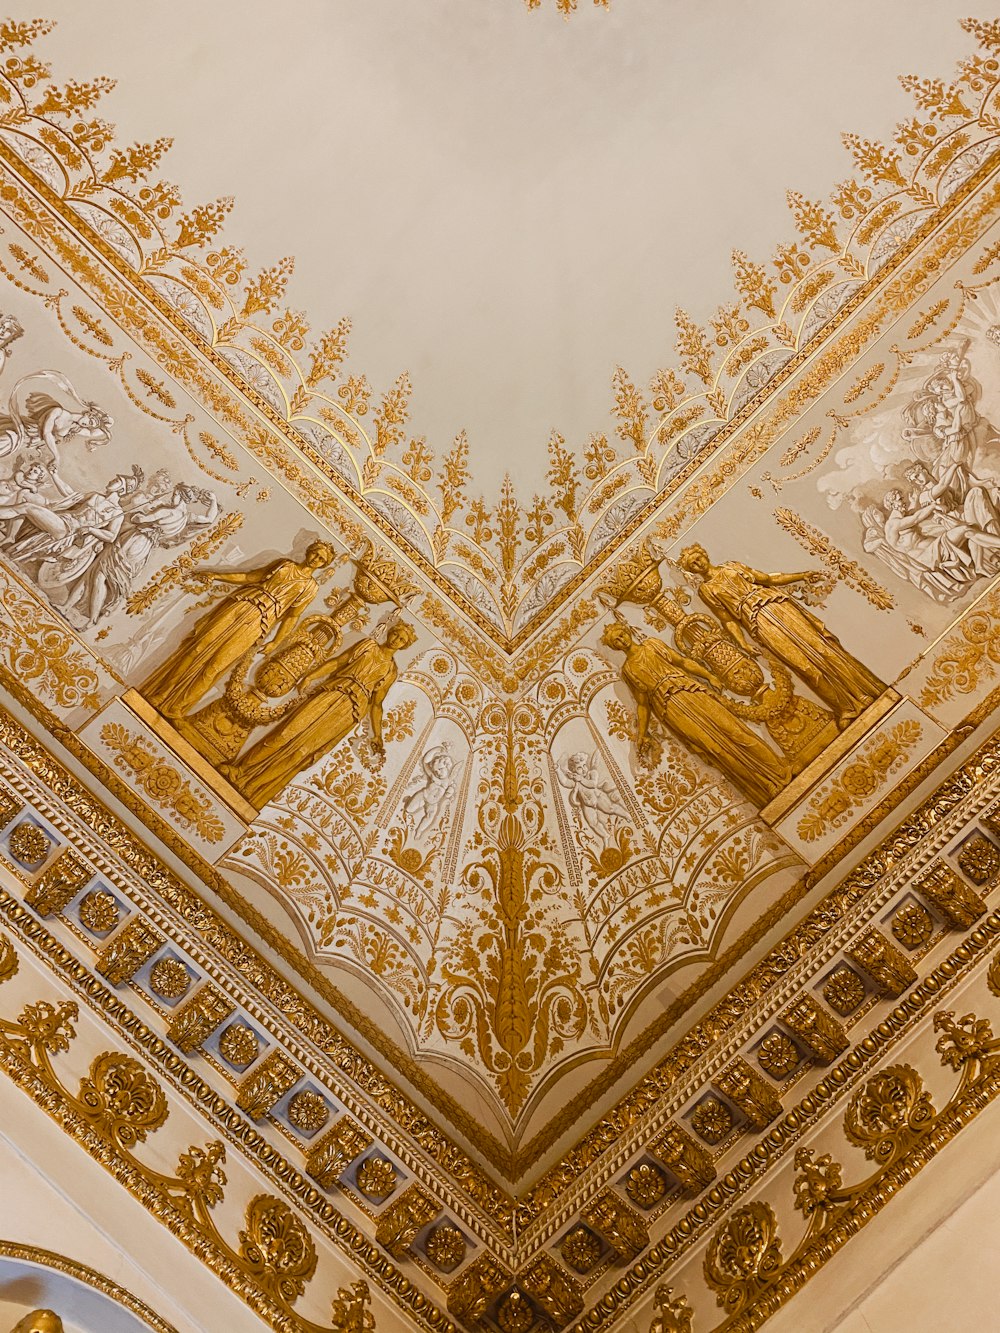 Textil floral dorado y blanco